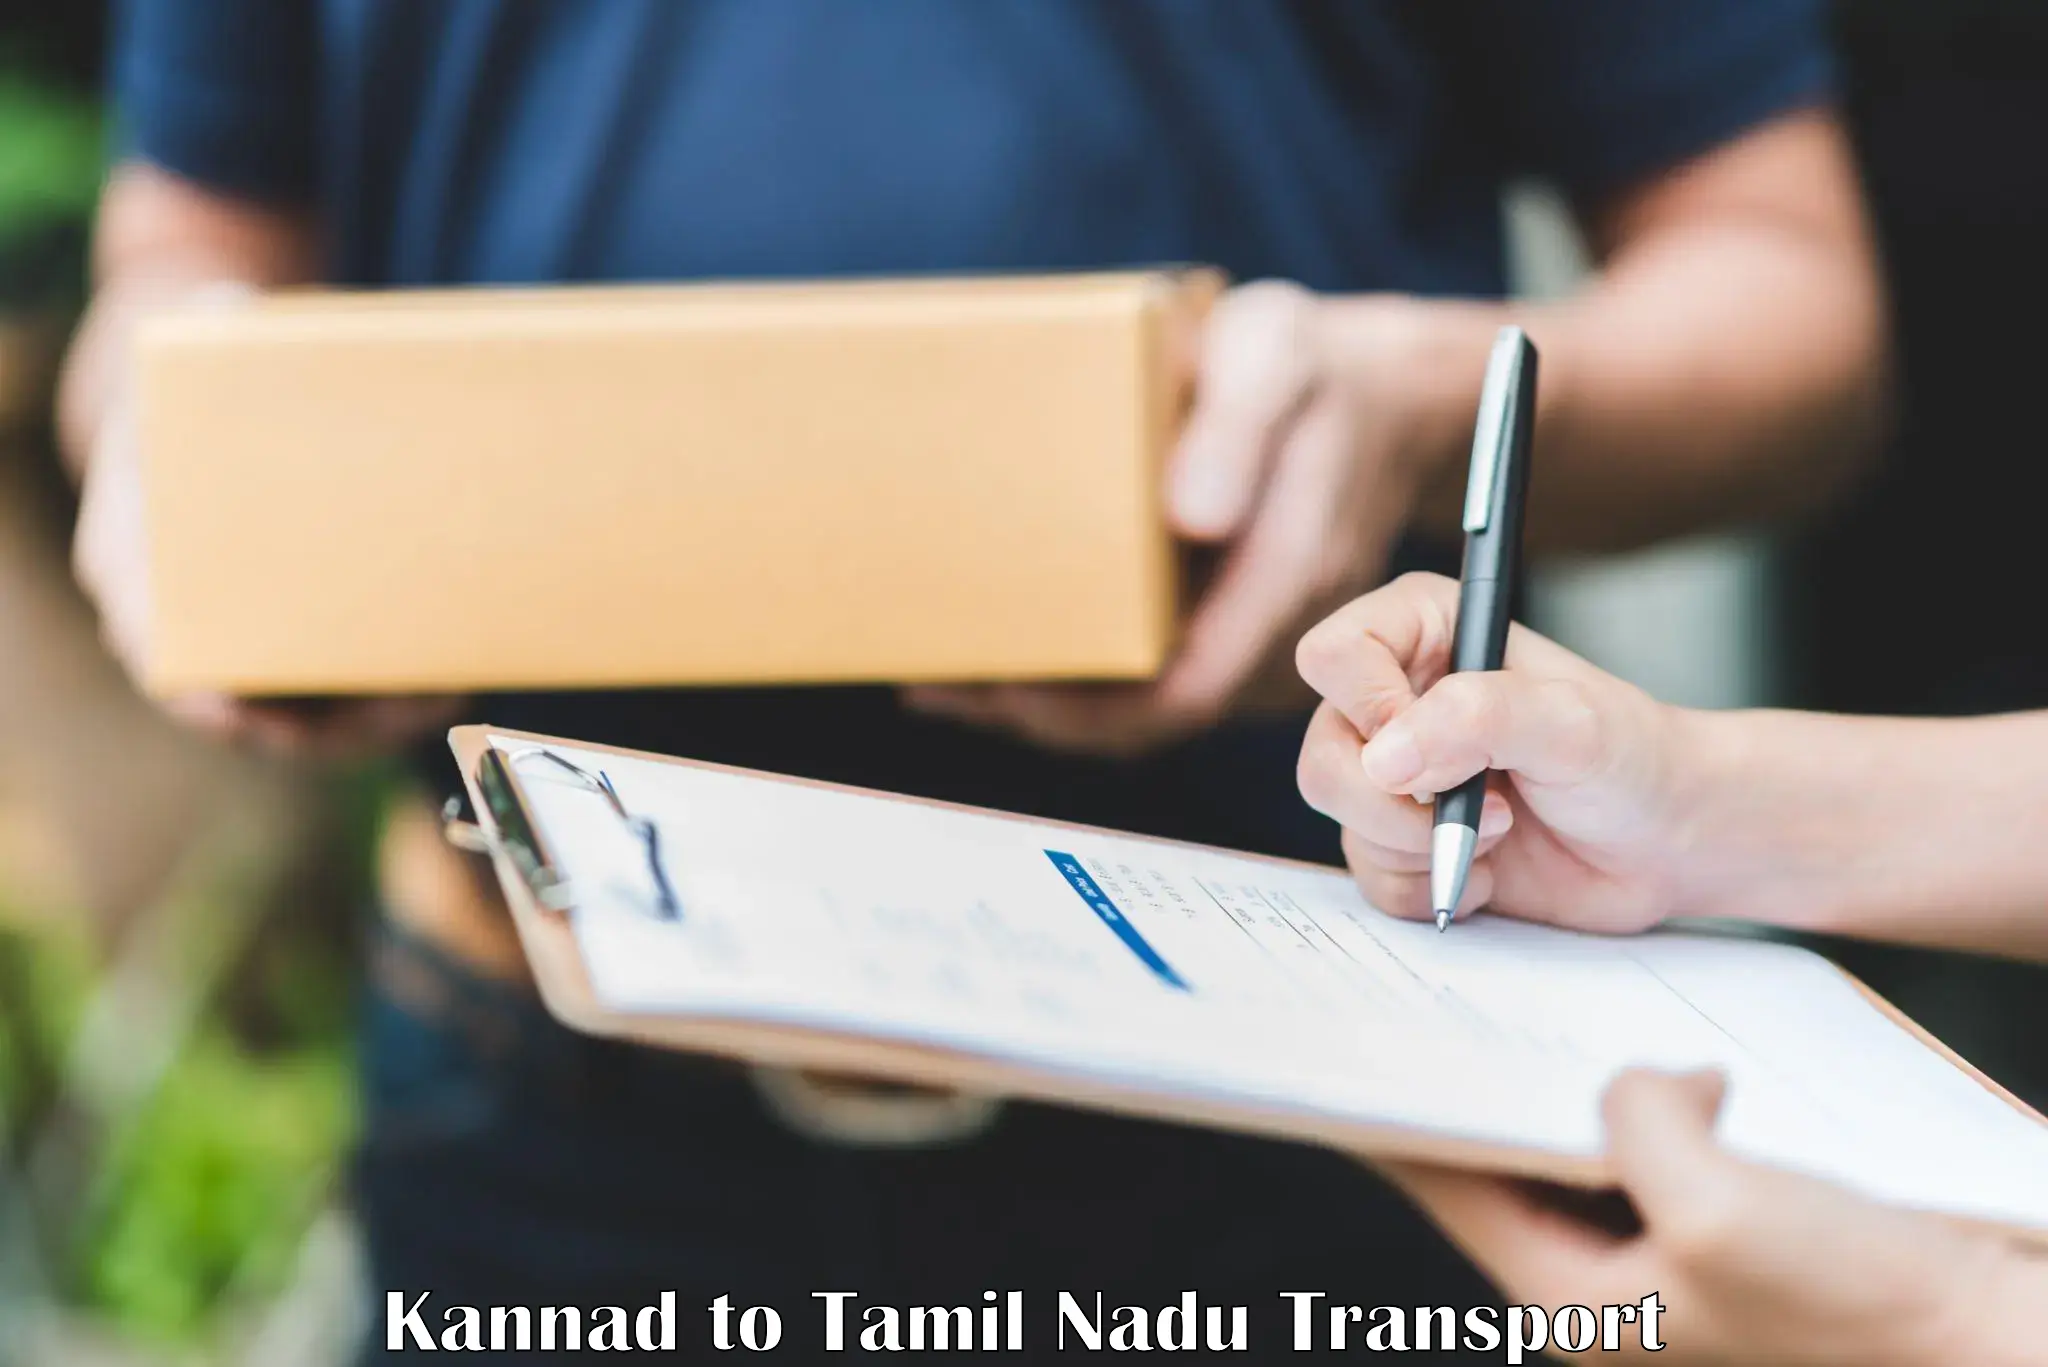 Nearest transport service Kannad to The Gandhigram Rural Institute